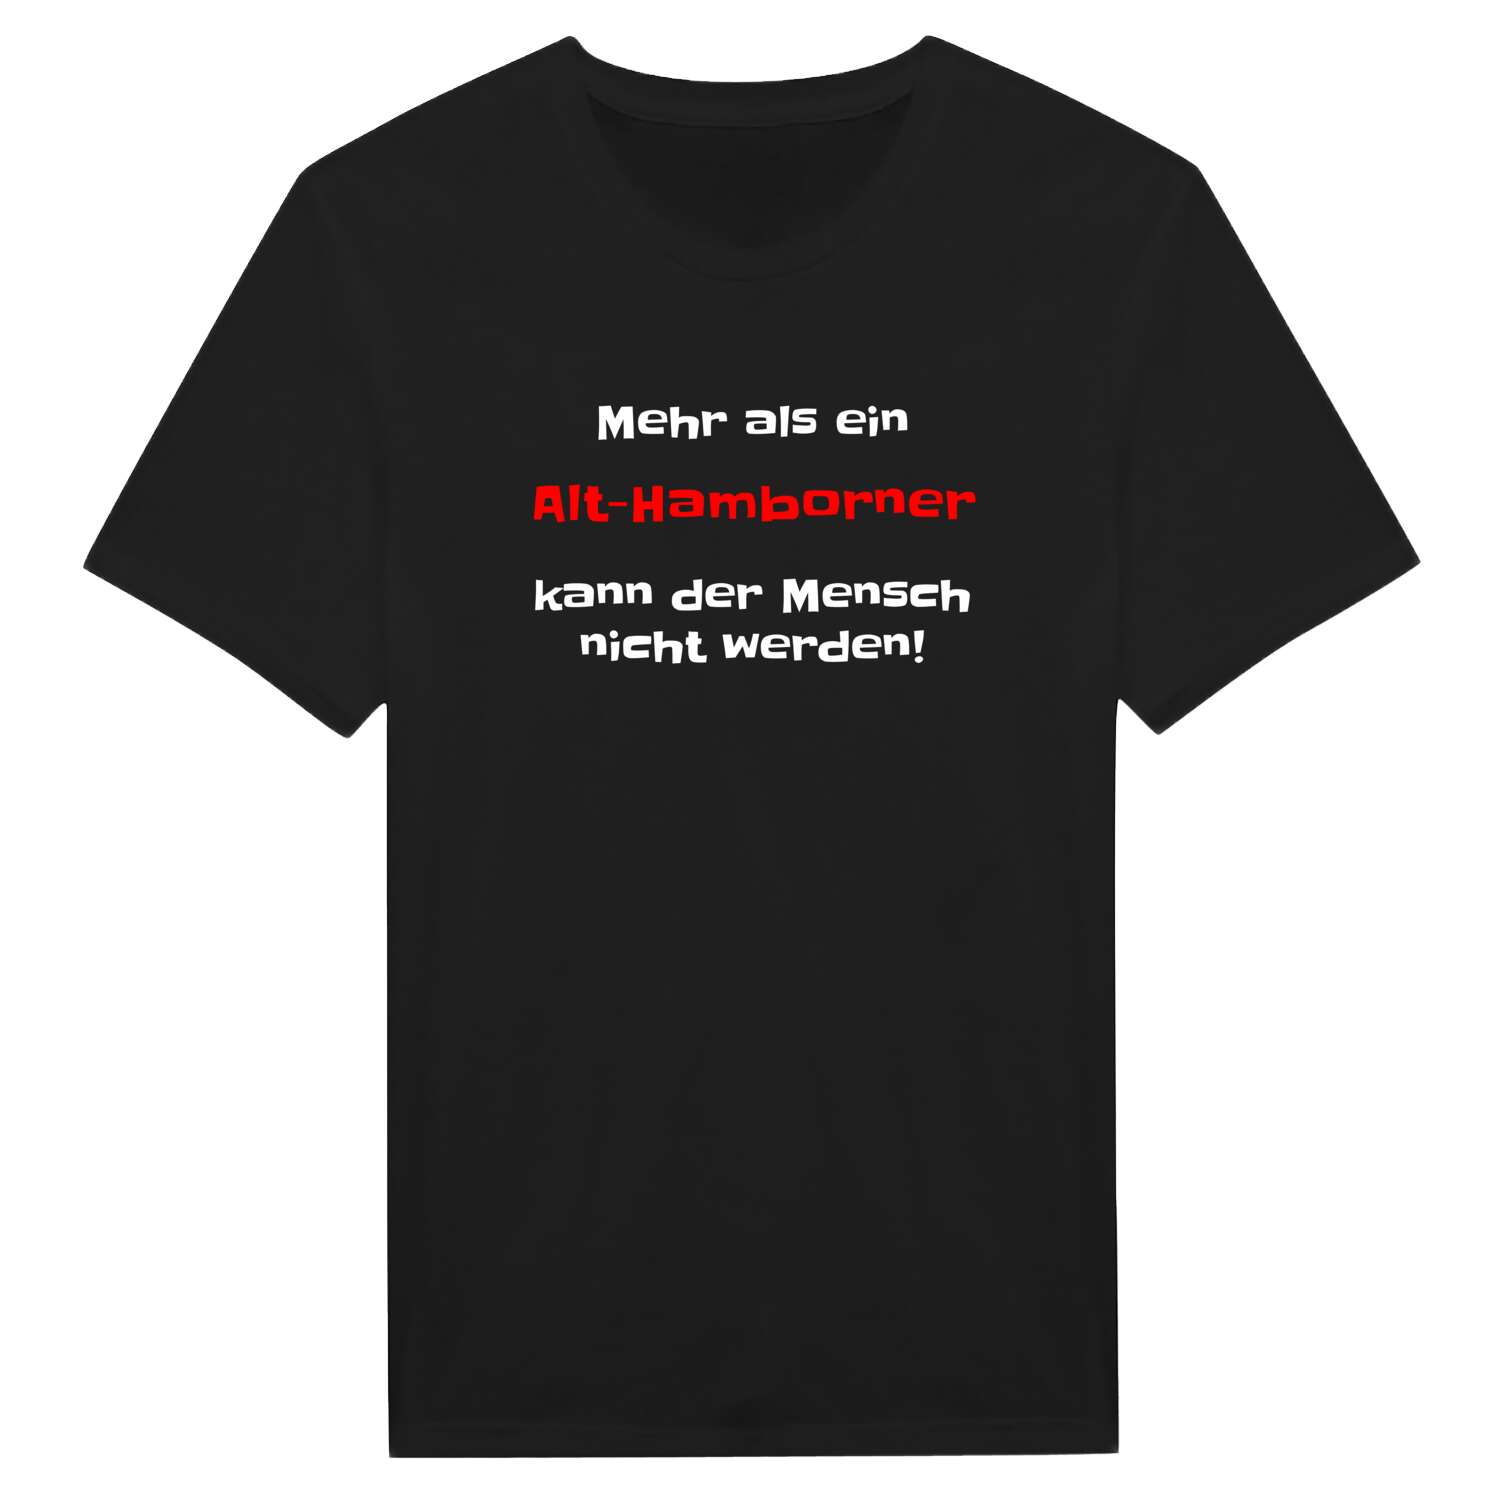 Alt-Hamborn T-Shirt »Mehr als ein«